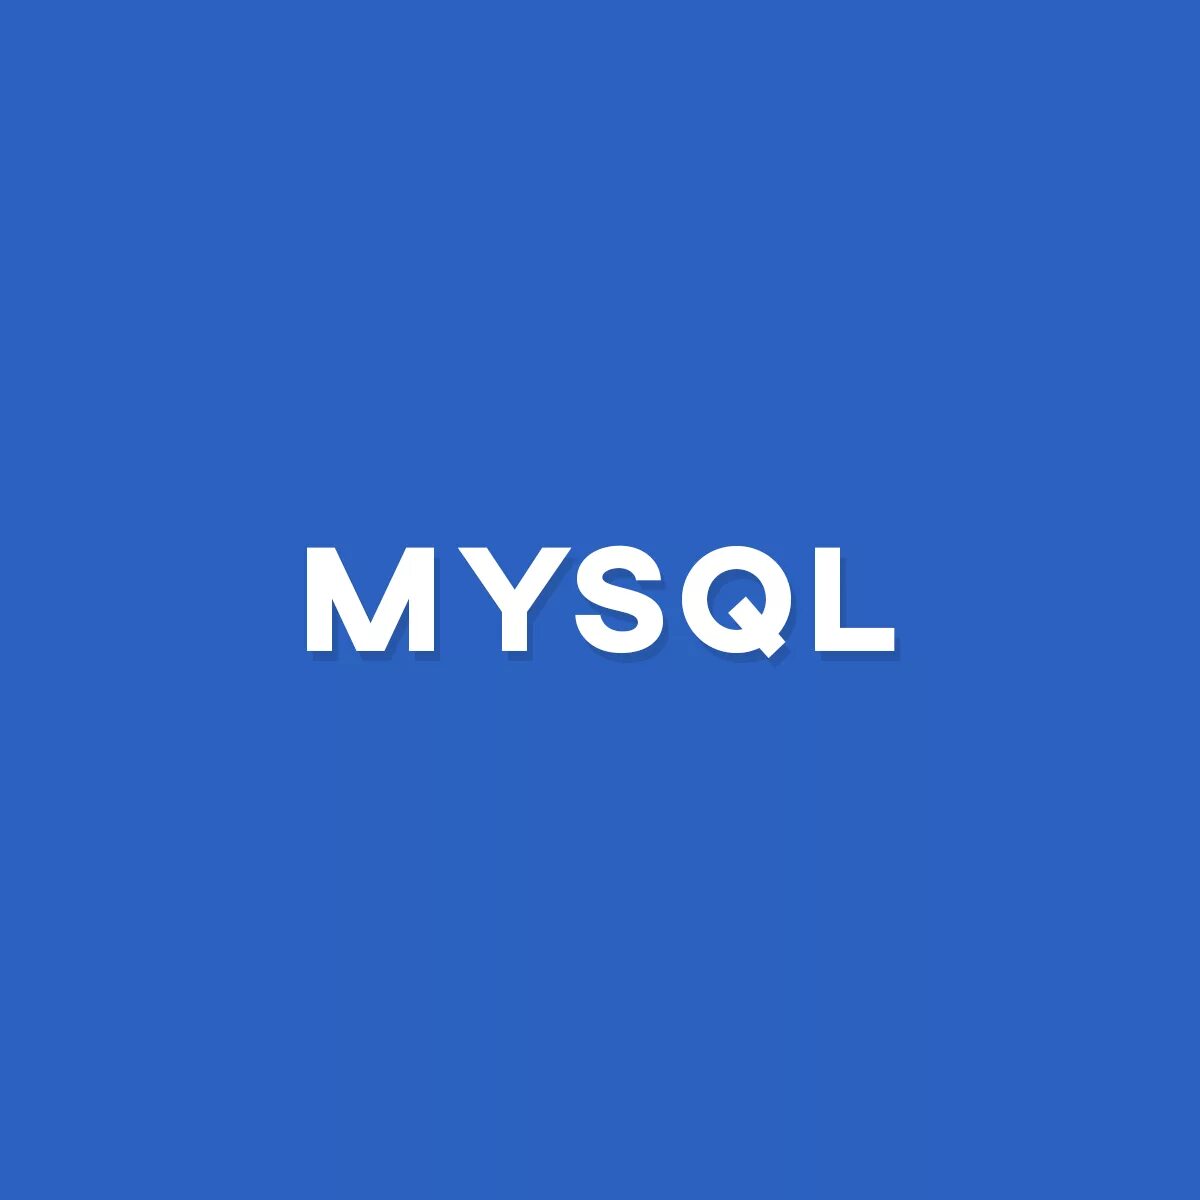 Mysql2. MYSQL. Значок MYSQL. Май SQL. MYSQL картинки для презентации.